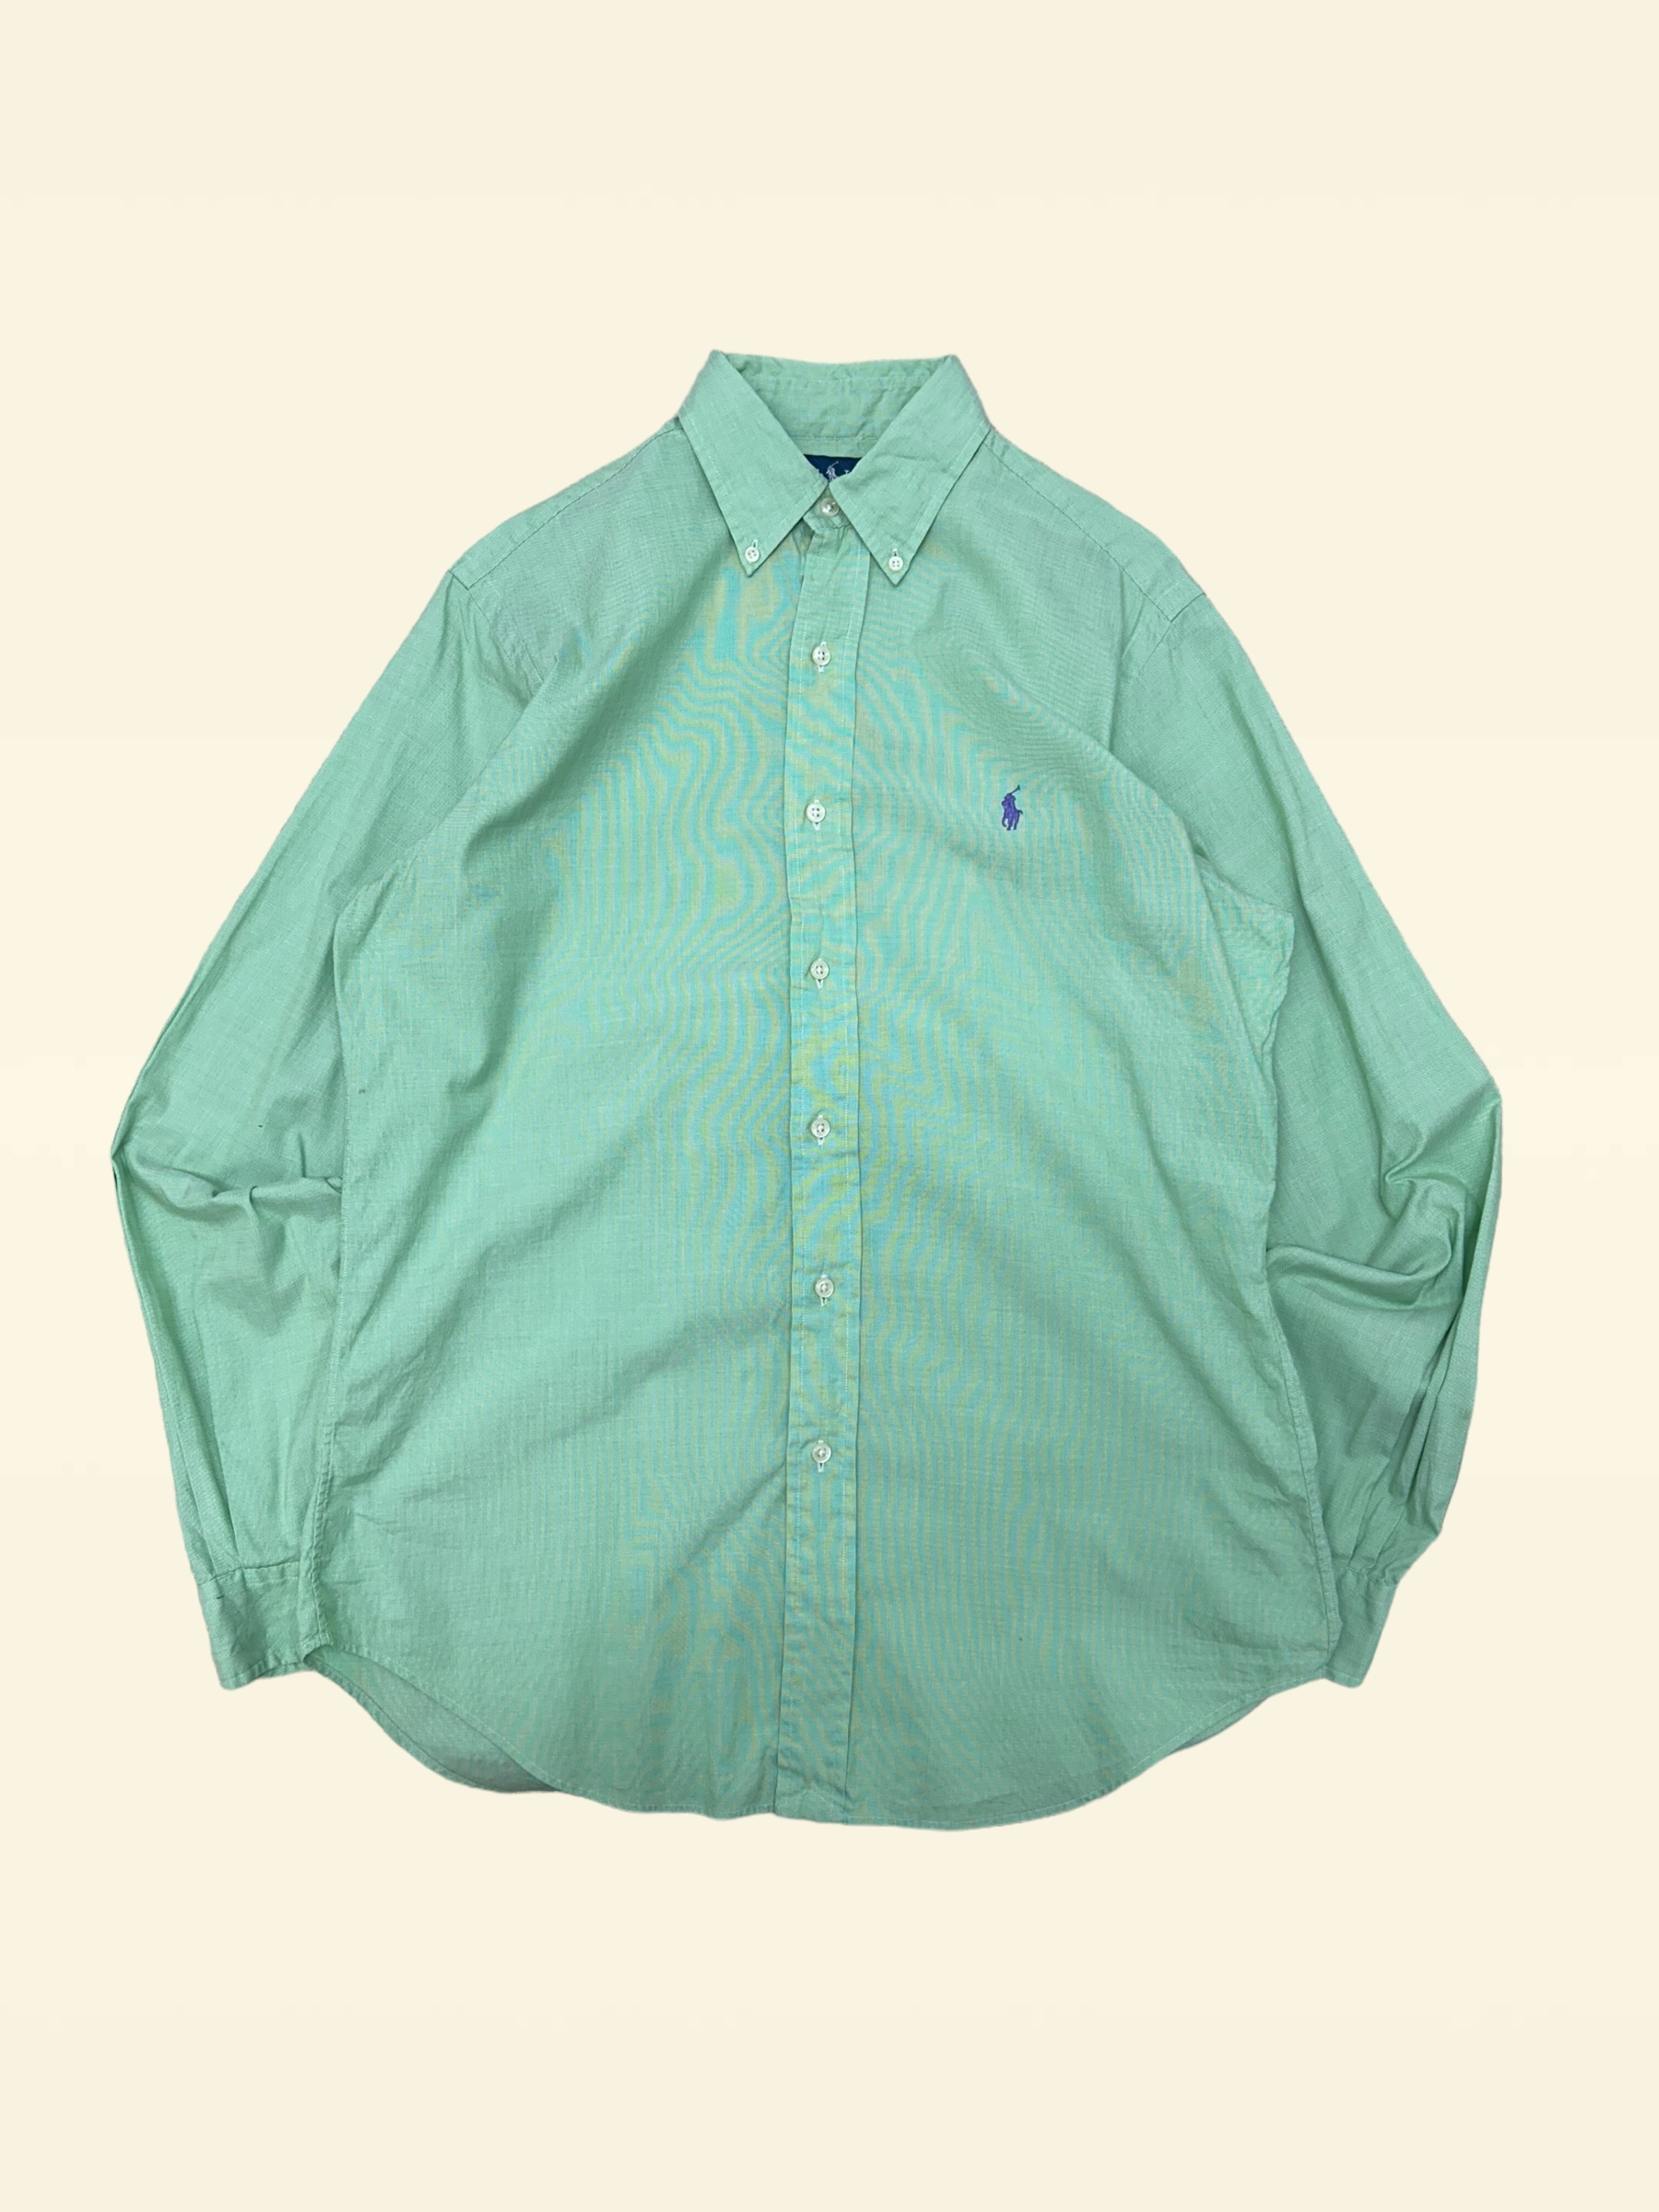 (From USA)Polo ralph lauren light green poplin shirt M